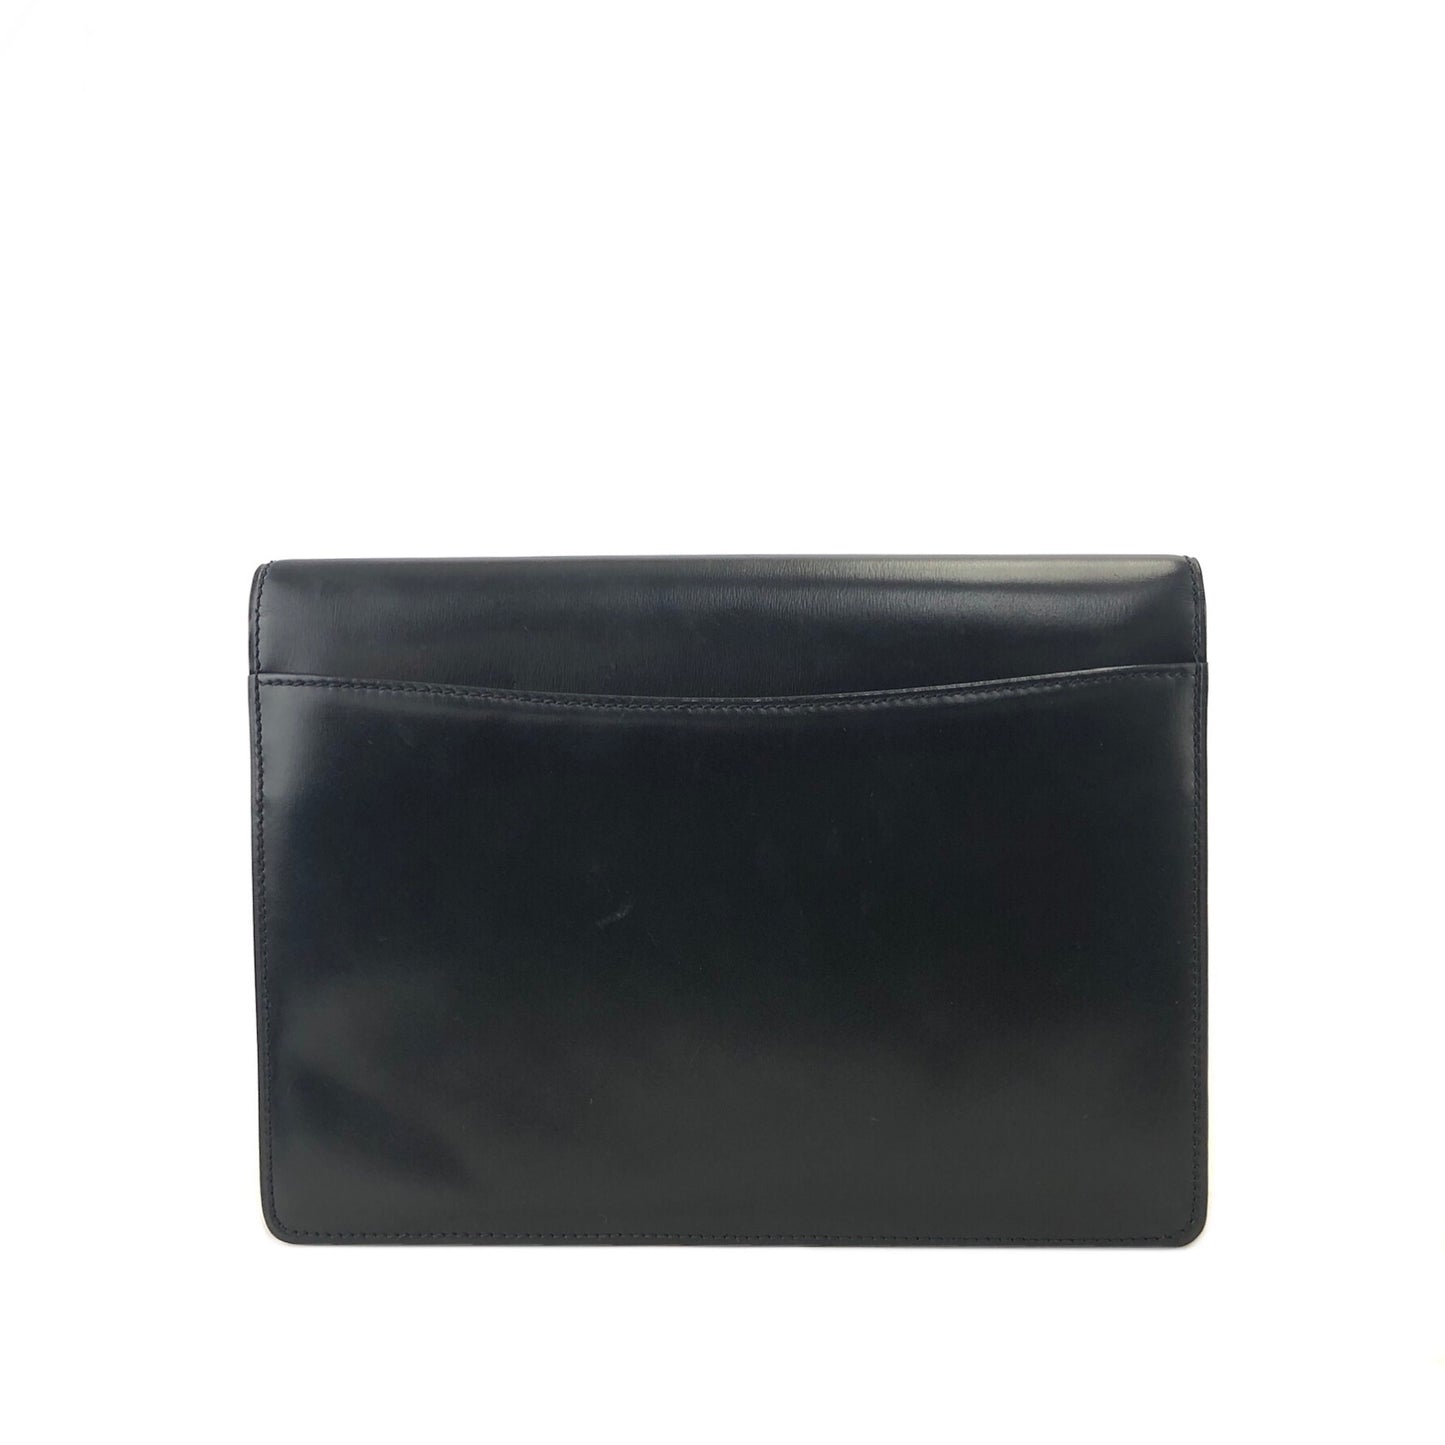 CELINE Starball Chain Leather Crossbody Shoulder Bag Black Vintage ive3ra